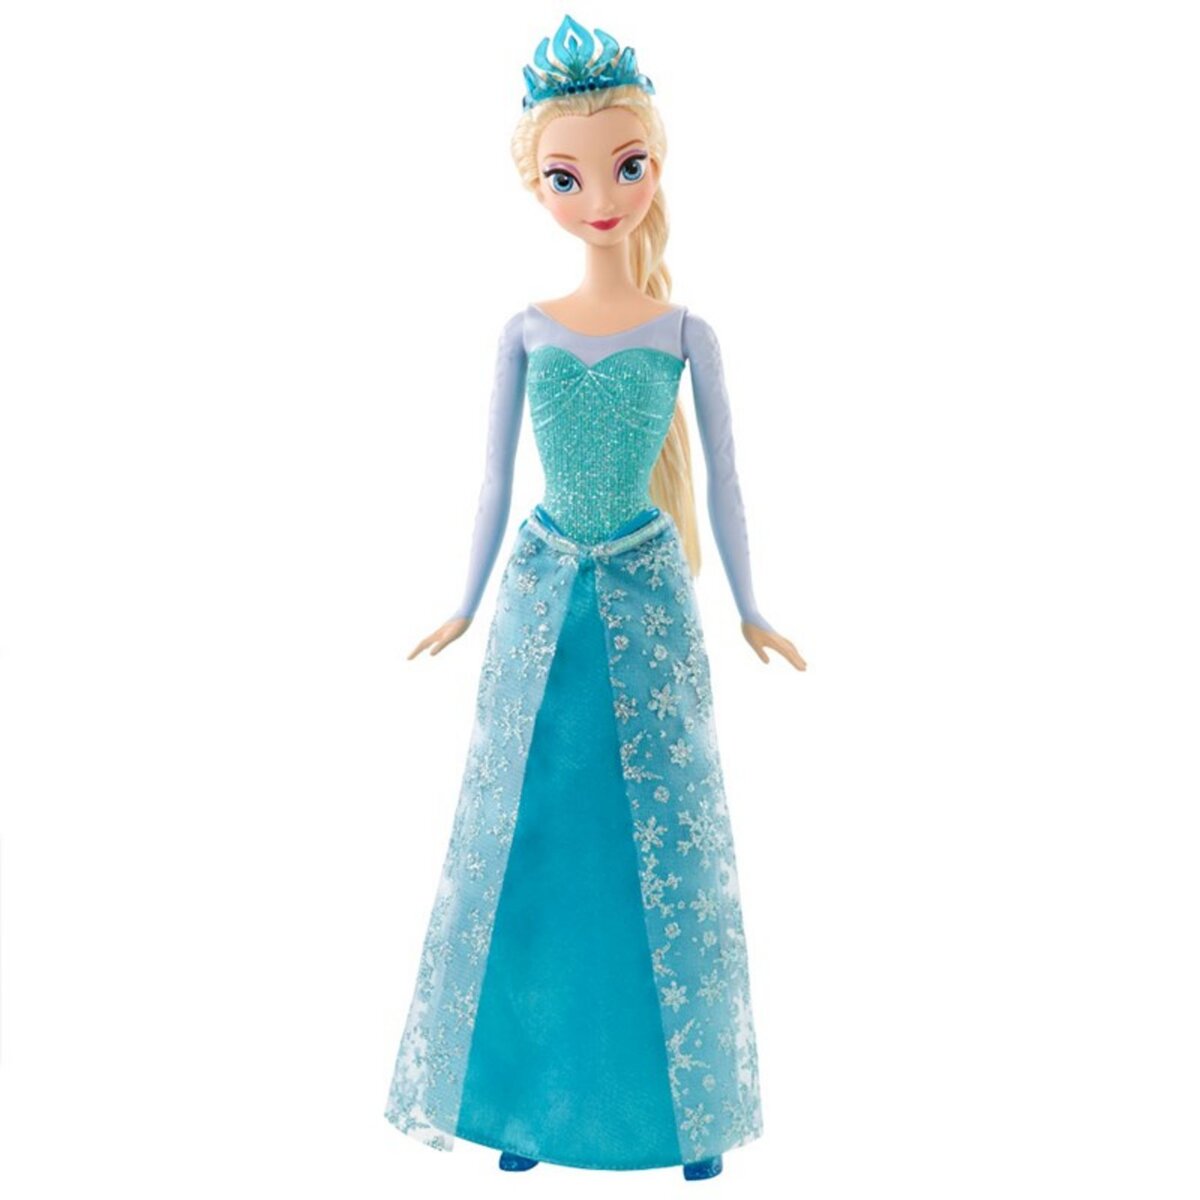 MATTEL Poupée Elsa paillettes La Reine des neiges